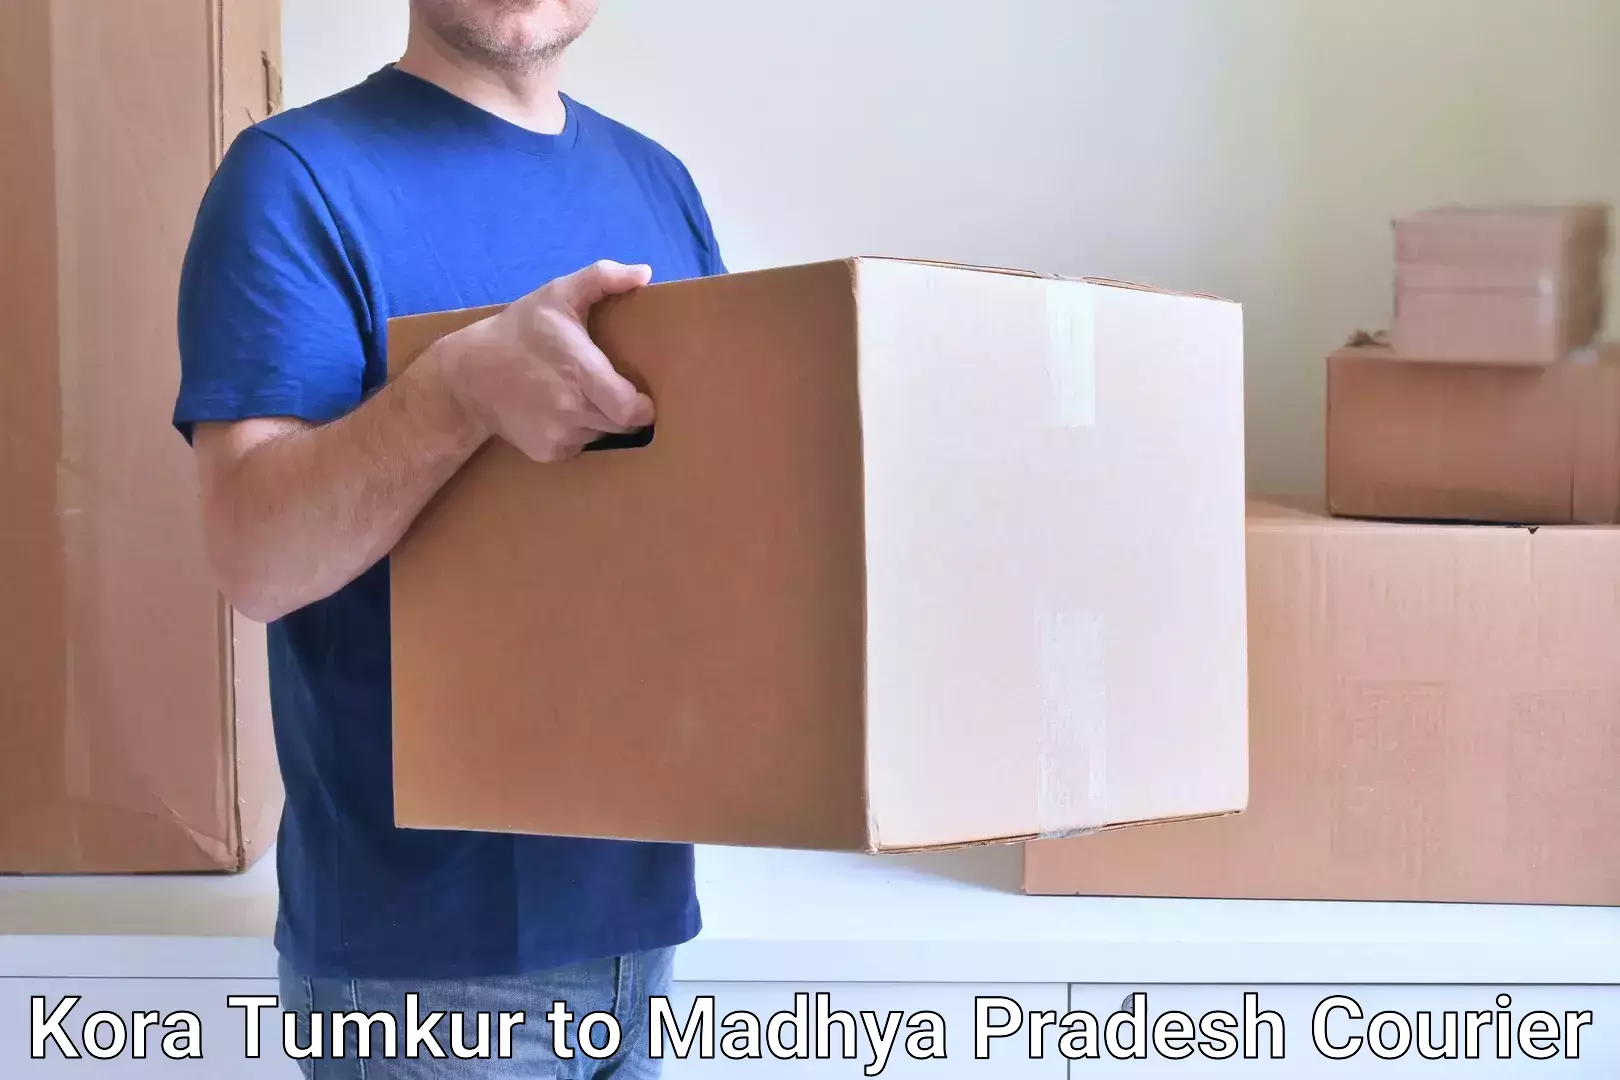 Secure packaging Kora Tumkur to Bichhiya